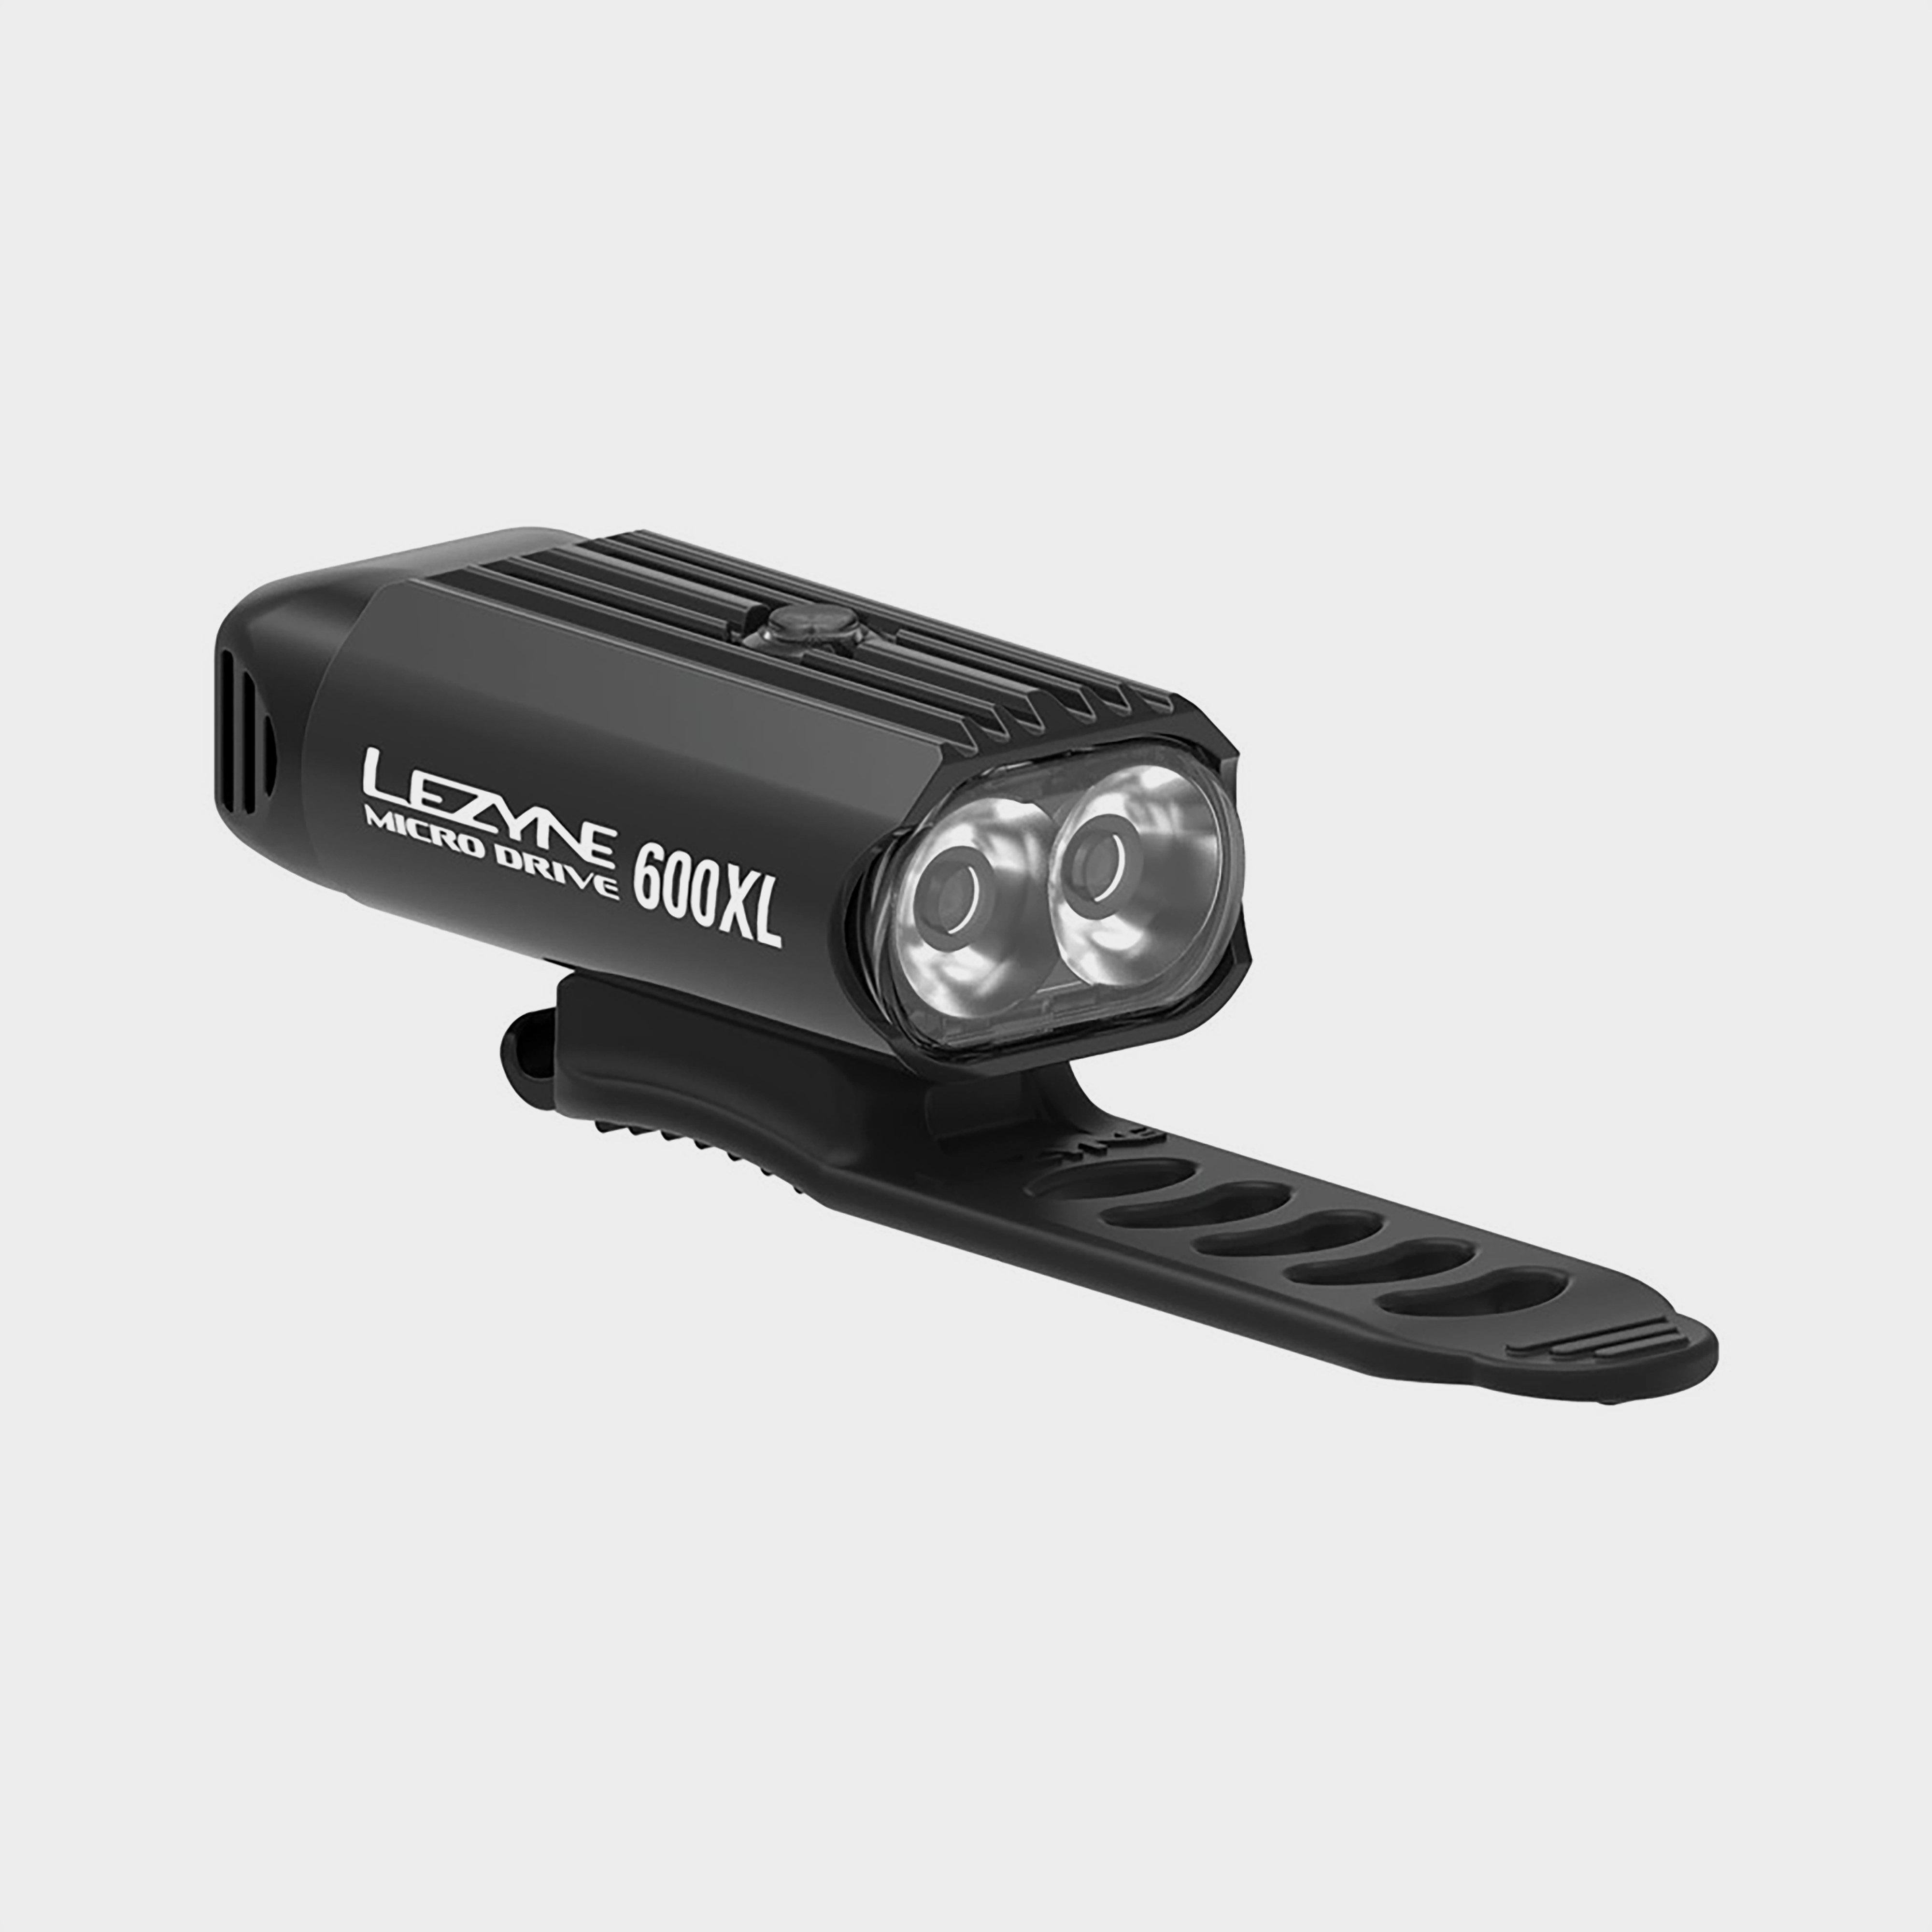  Lezyne Micro Drive 600XL Bike Light, Black